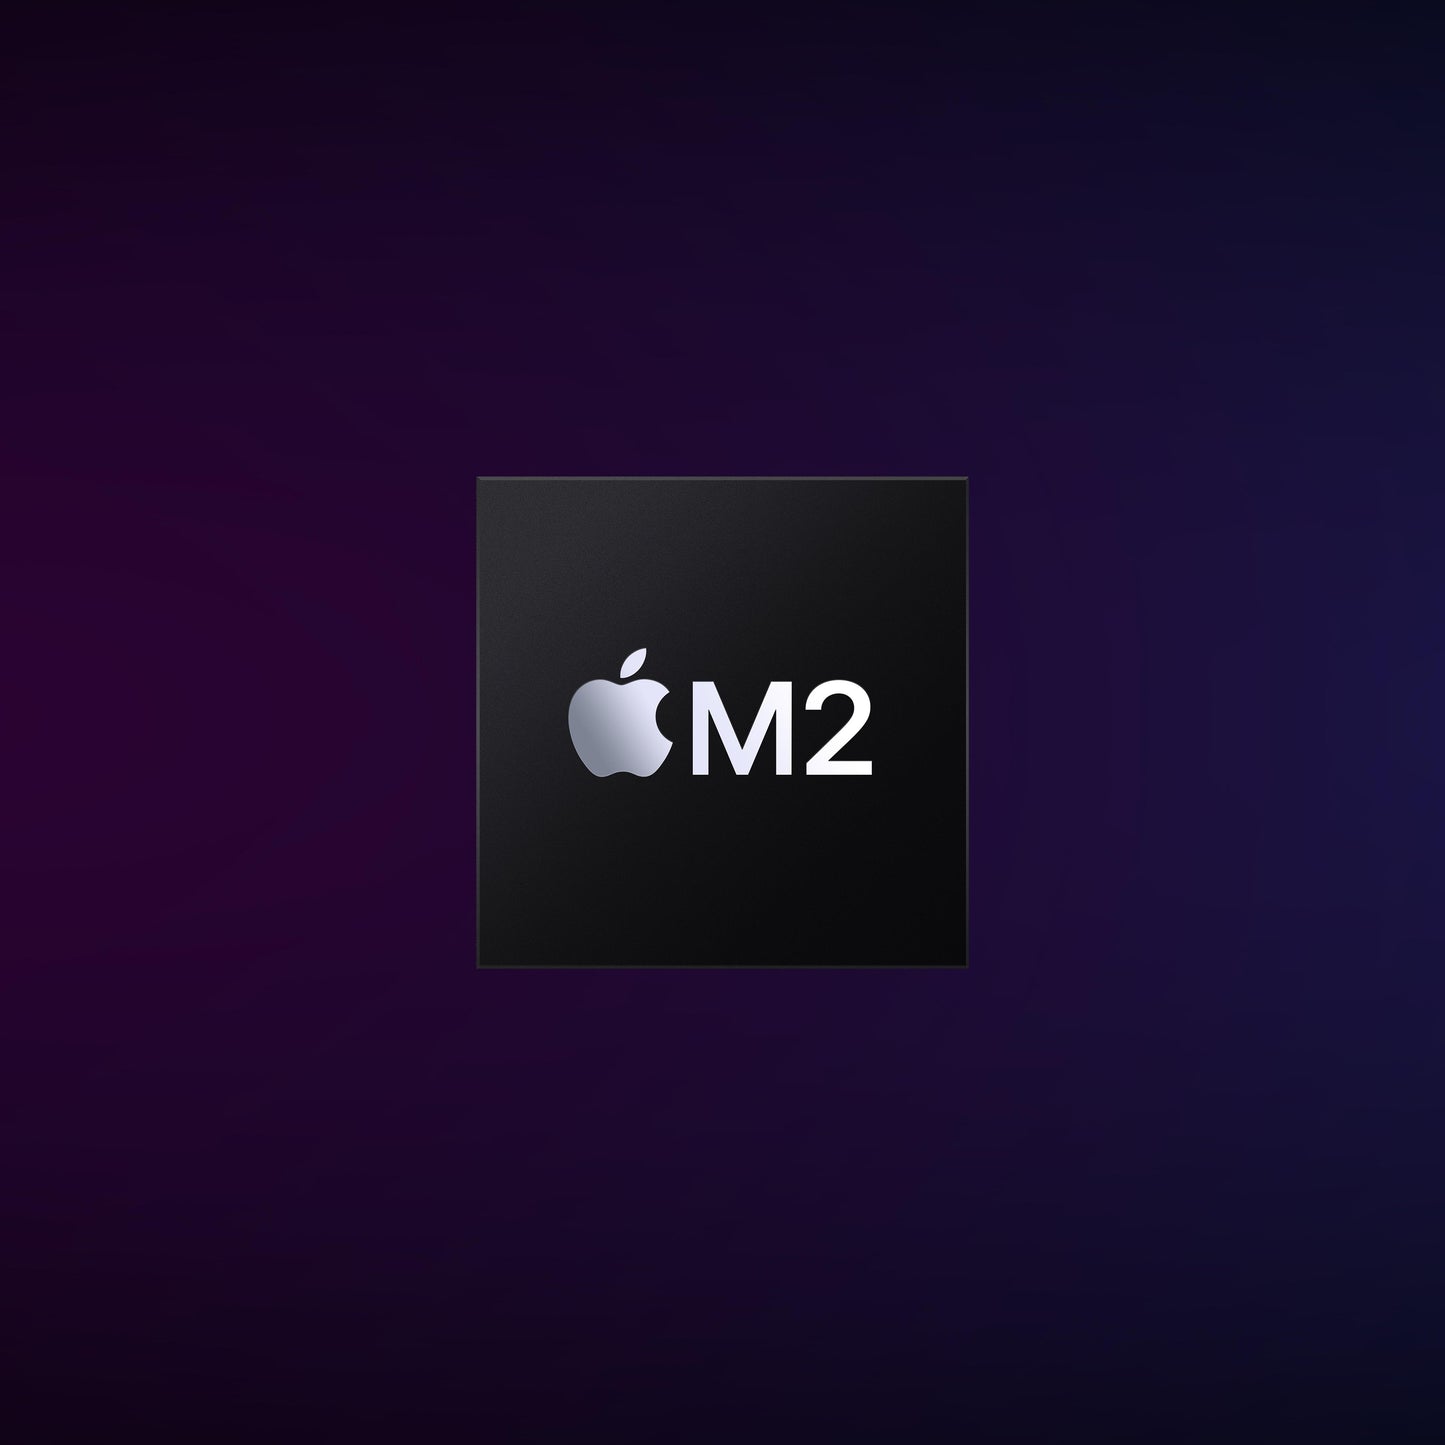 Mac mini: Apple M2 chip with 8_core CPU and 10_core GPU, 512GB SSD - Silver